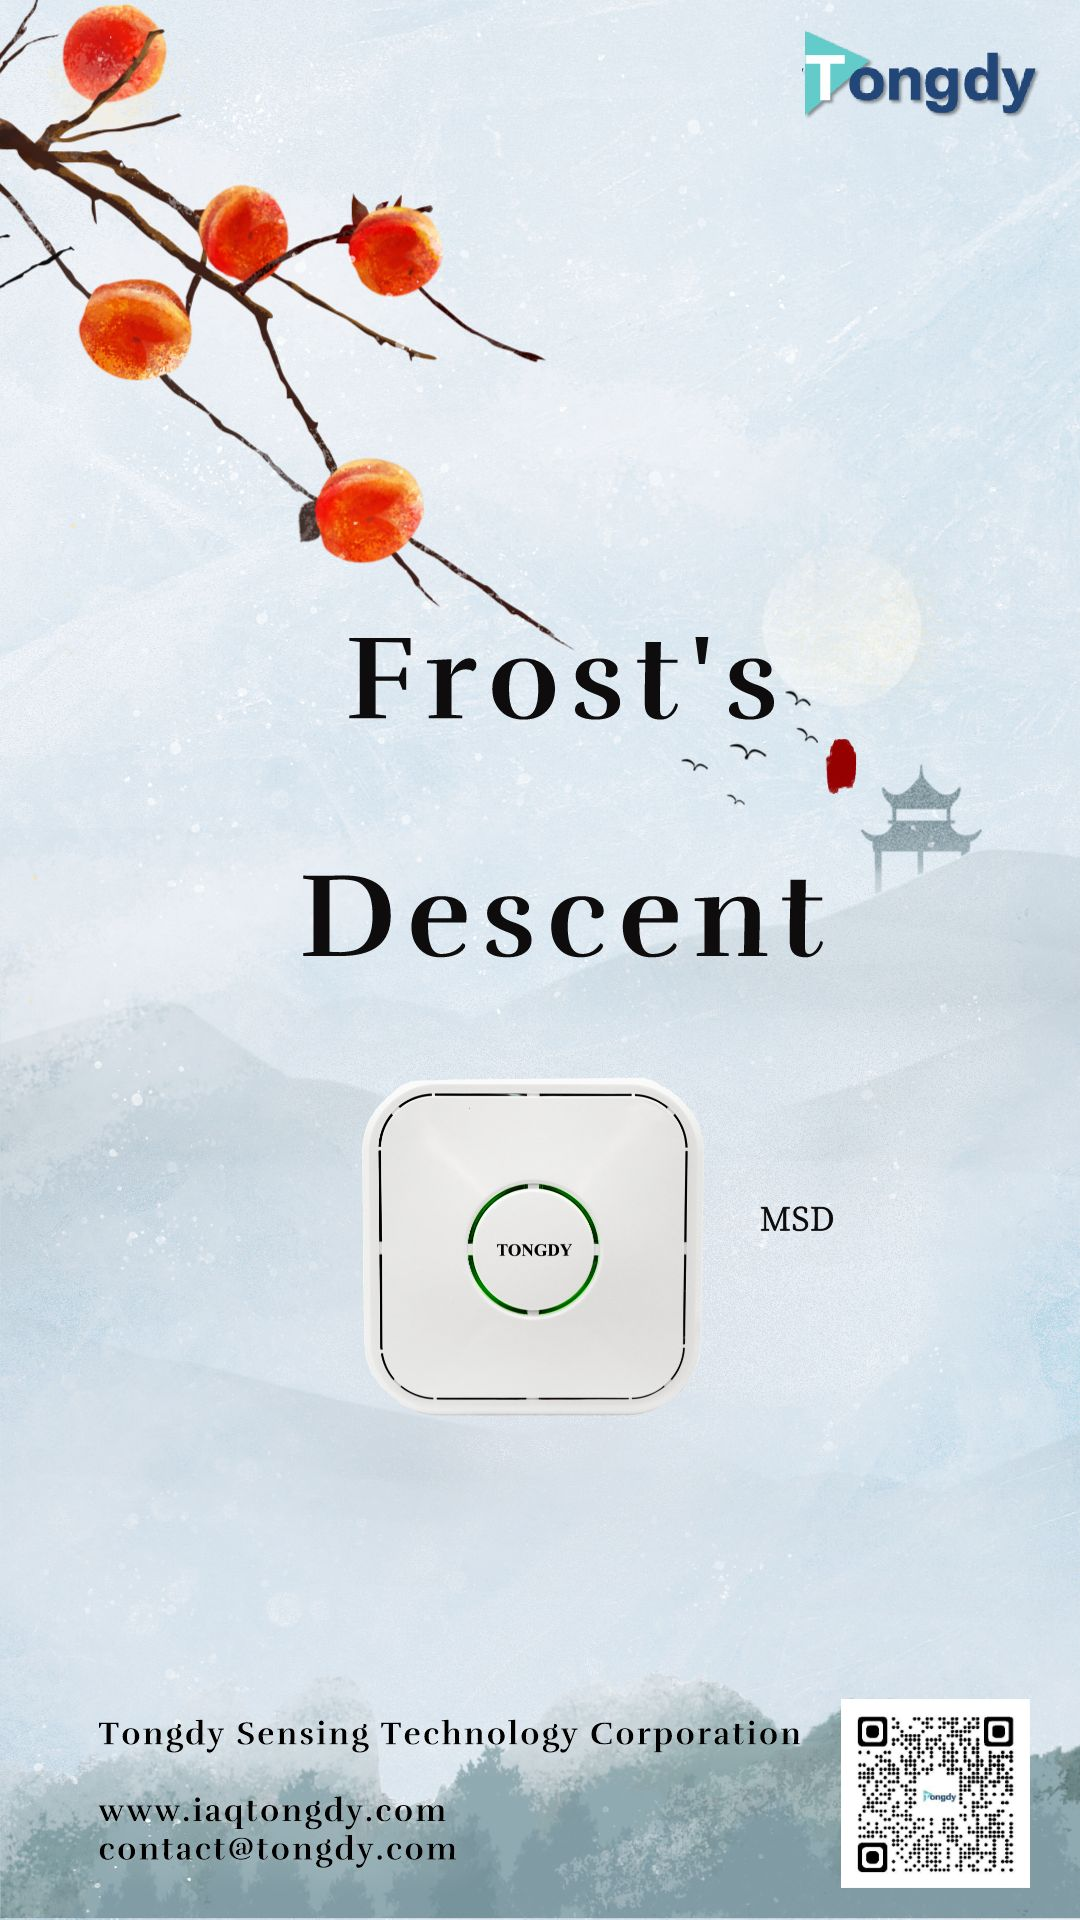 La discesa di Frost